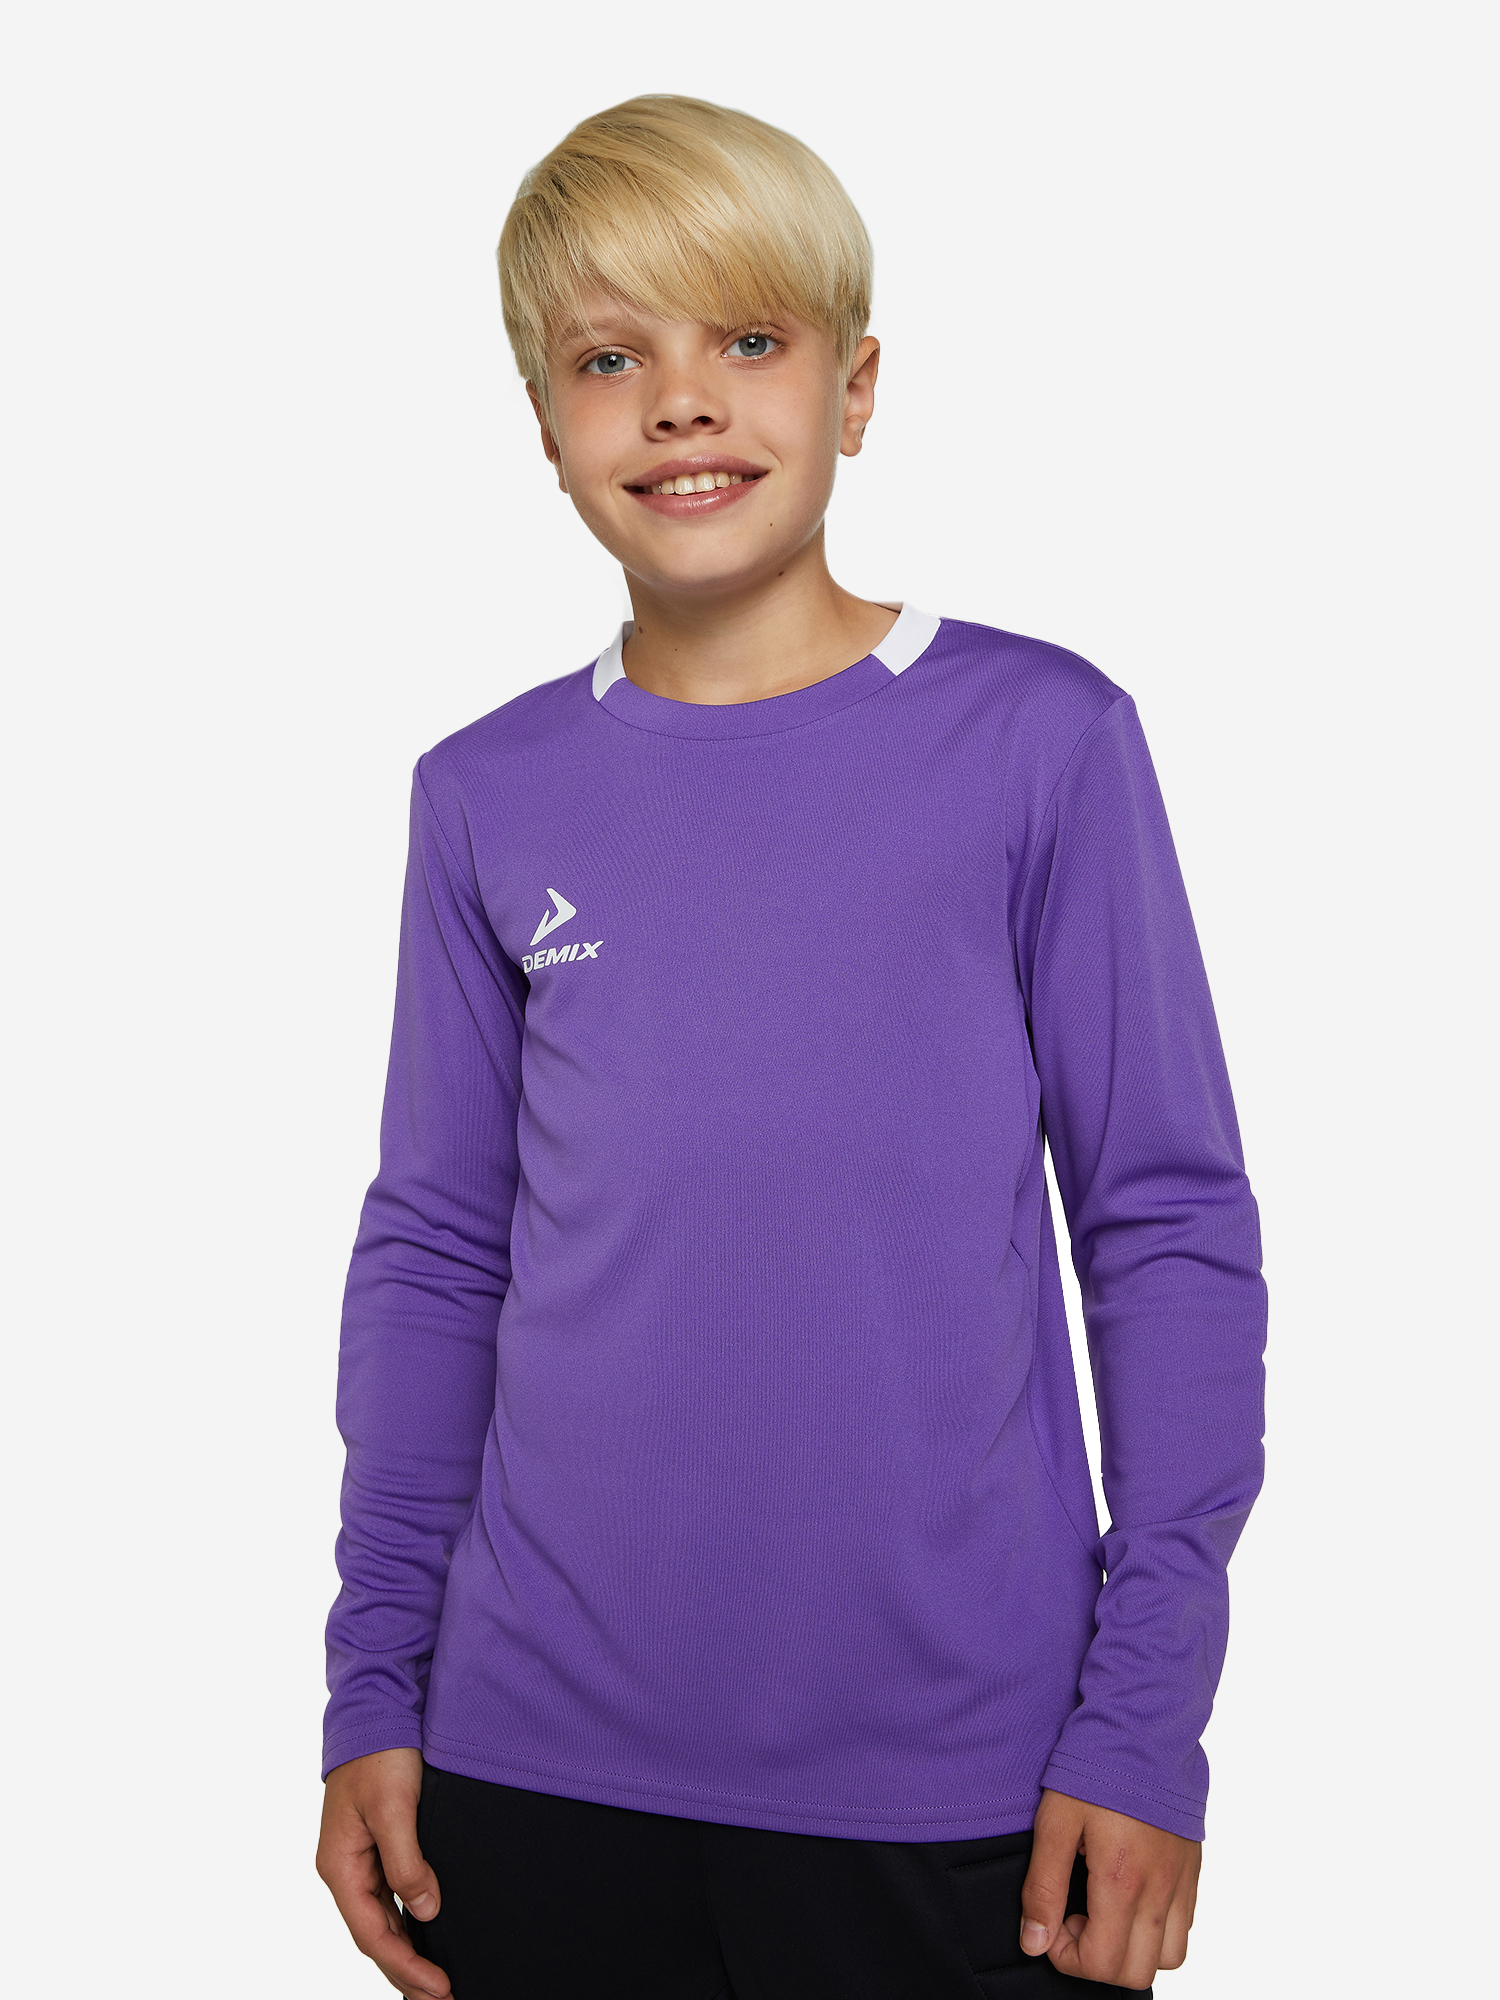 Лонгслив для мальчиков Demix Goalkeeper, Фиолетовый